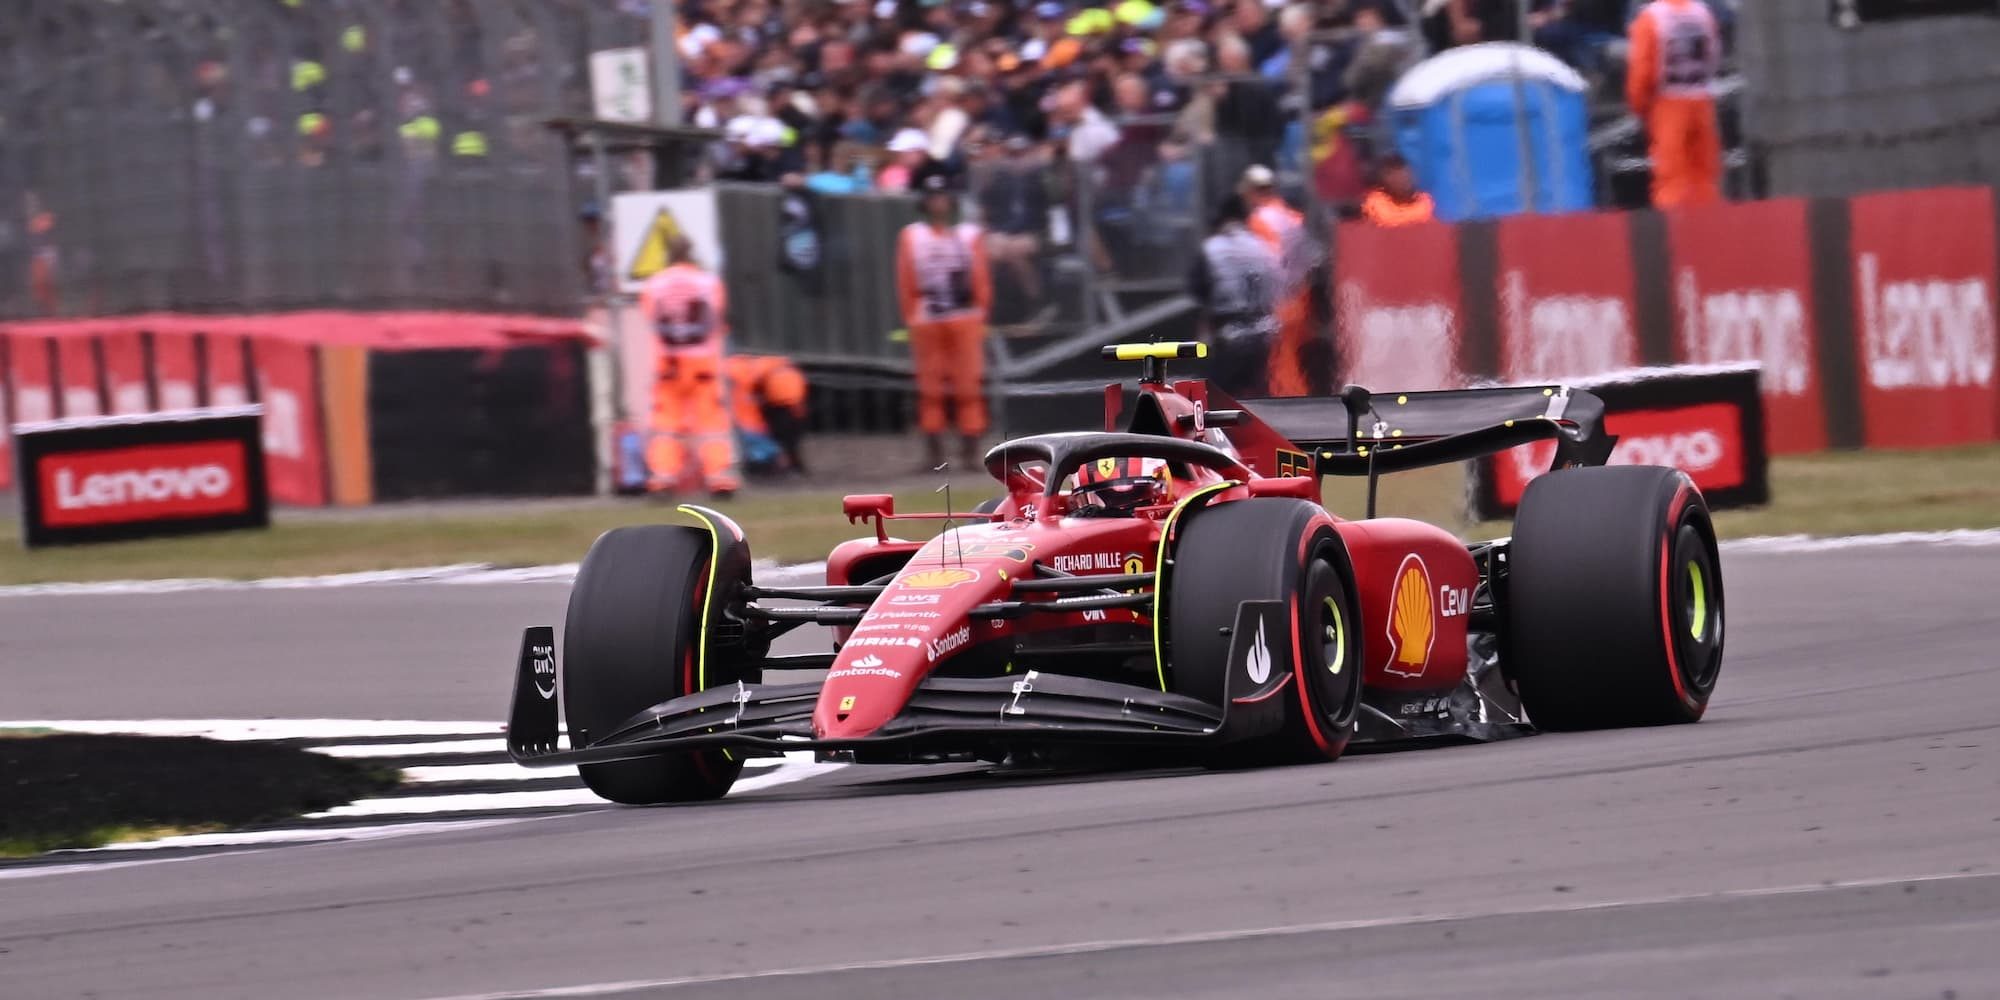 Ο Κάρλος Σάινθ πήρε την pole position στον αγώνα της Formula 1 στο Silverstone